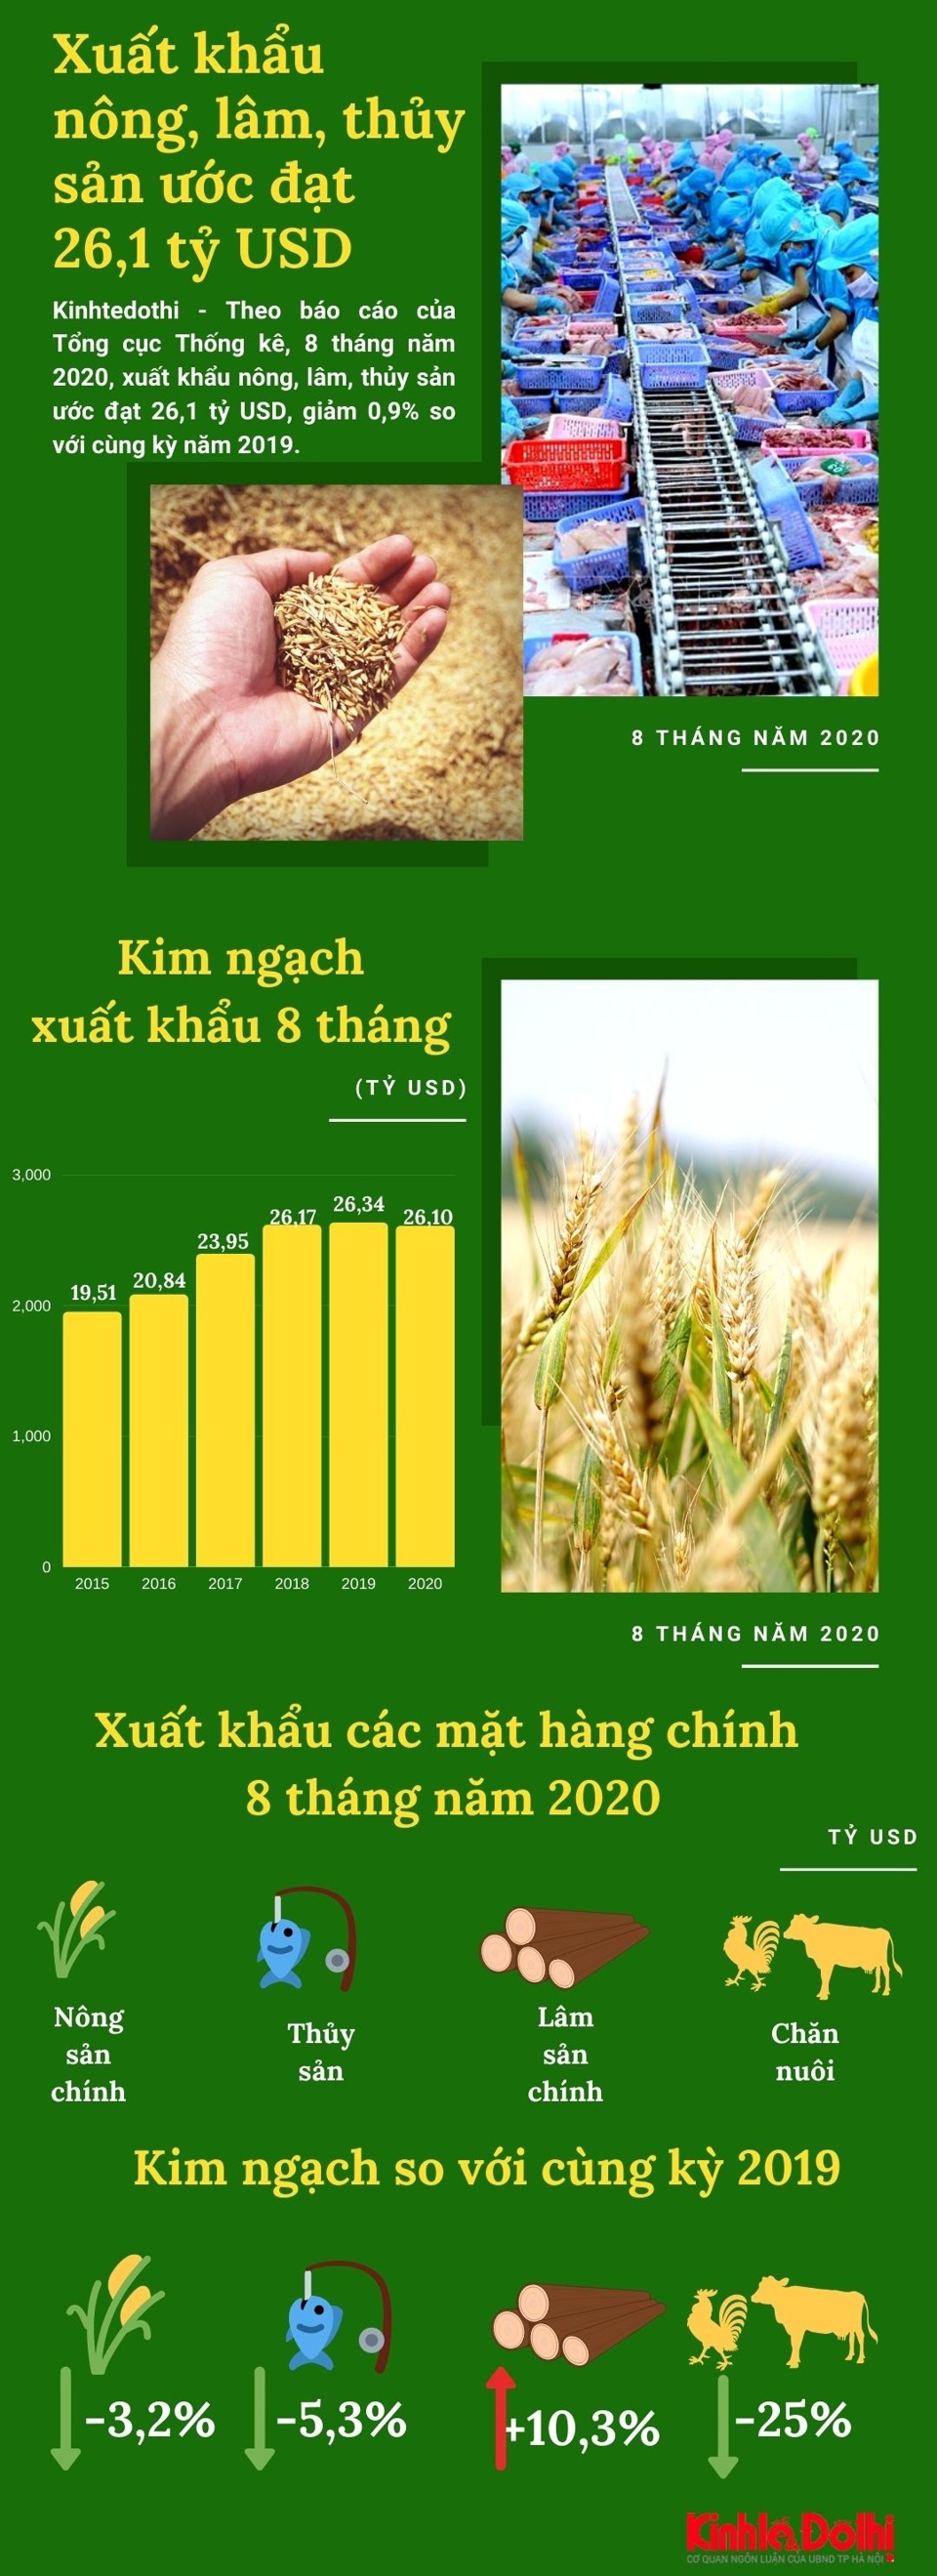 [Infographic] Xuất khẩu nông, lâm, thủy sản ước đạt 26,1 tỷ USD - Ảnh 1